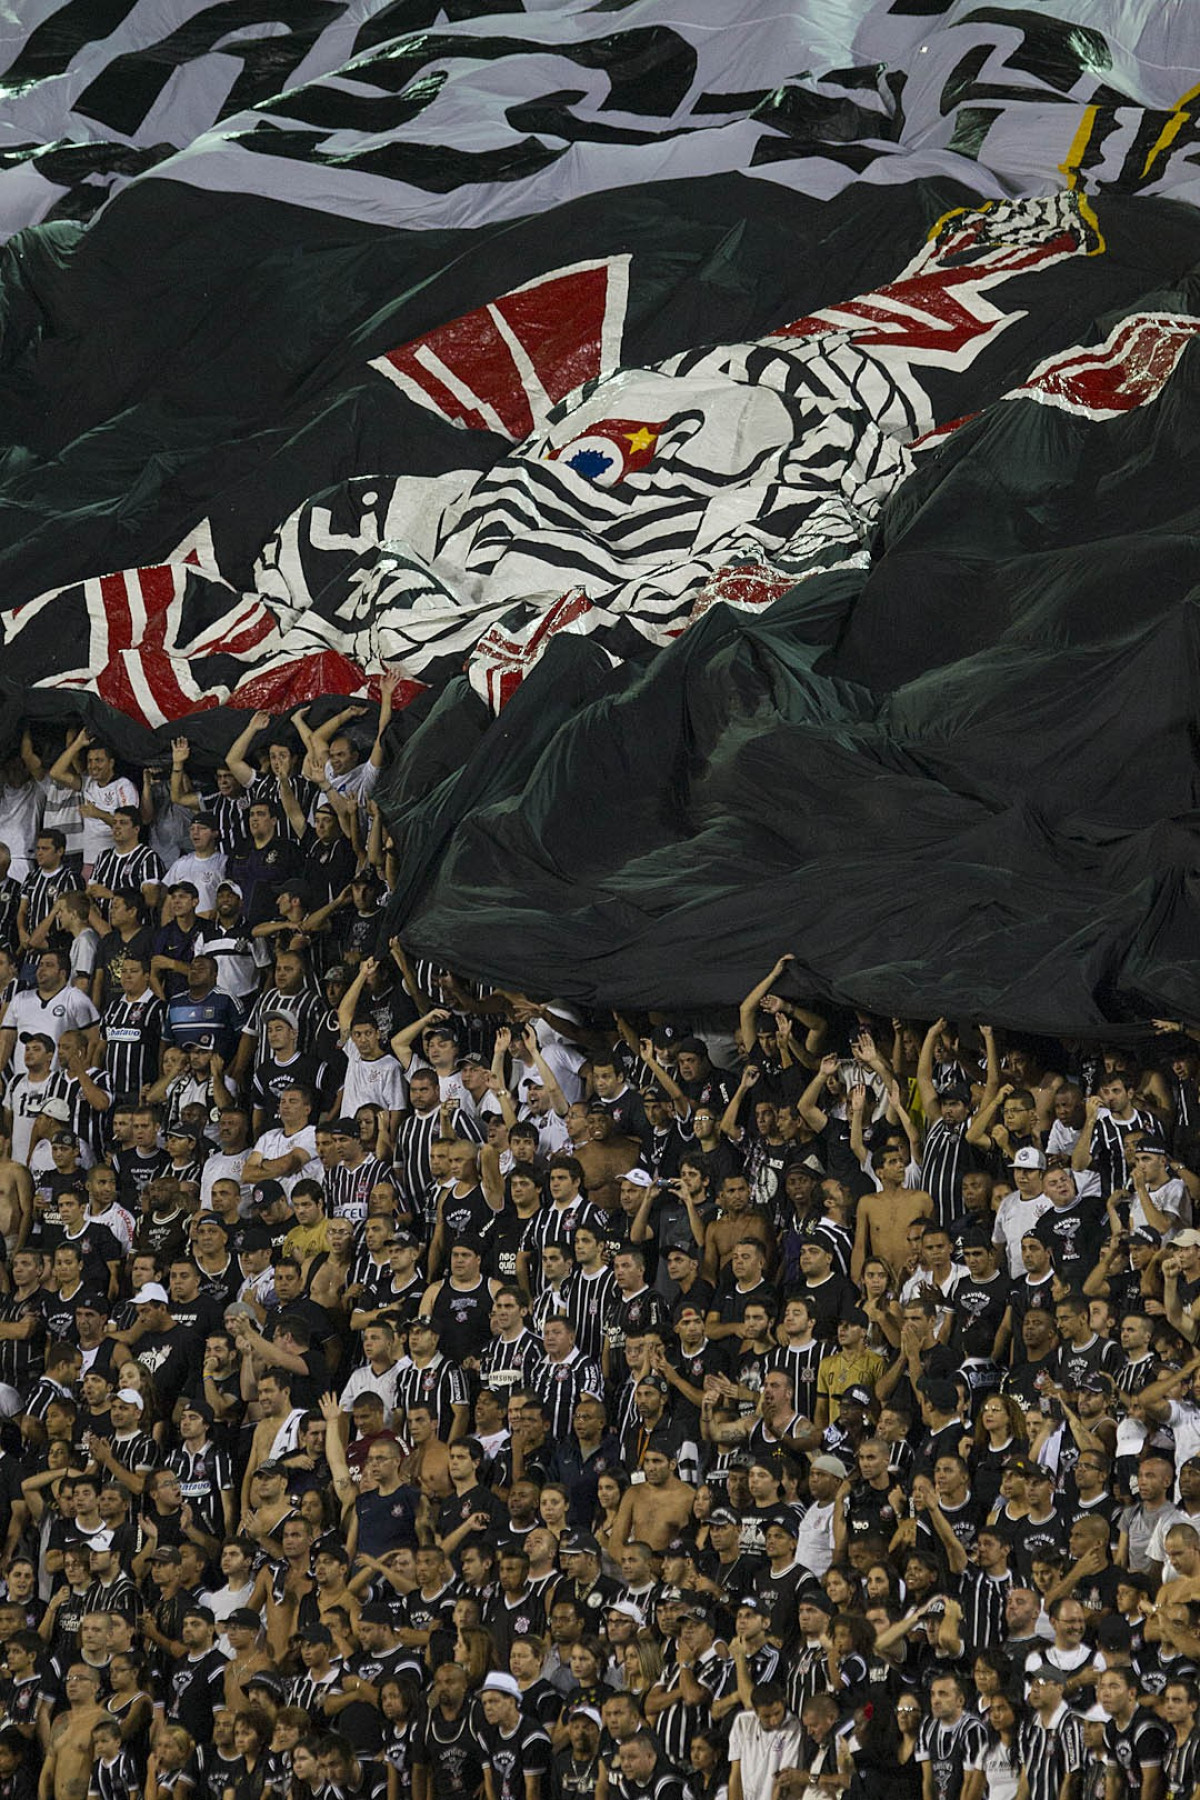 Durante a partida entre Corinthians/Brasil x Tijuana/Mxico, realizada esta noite no estdio do Pacaembu, jogo da volta da fase de classificao da Copa Libertadores de Amrica 2013